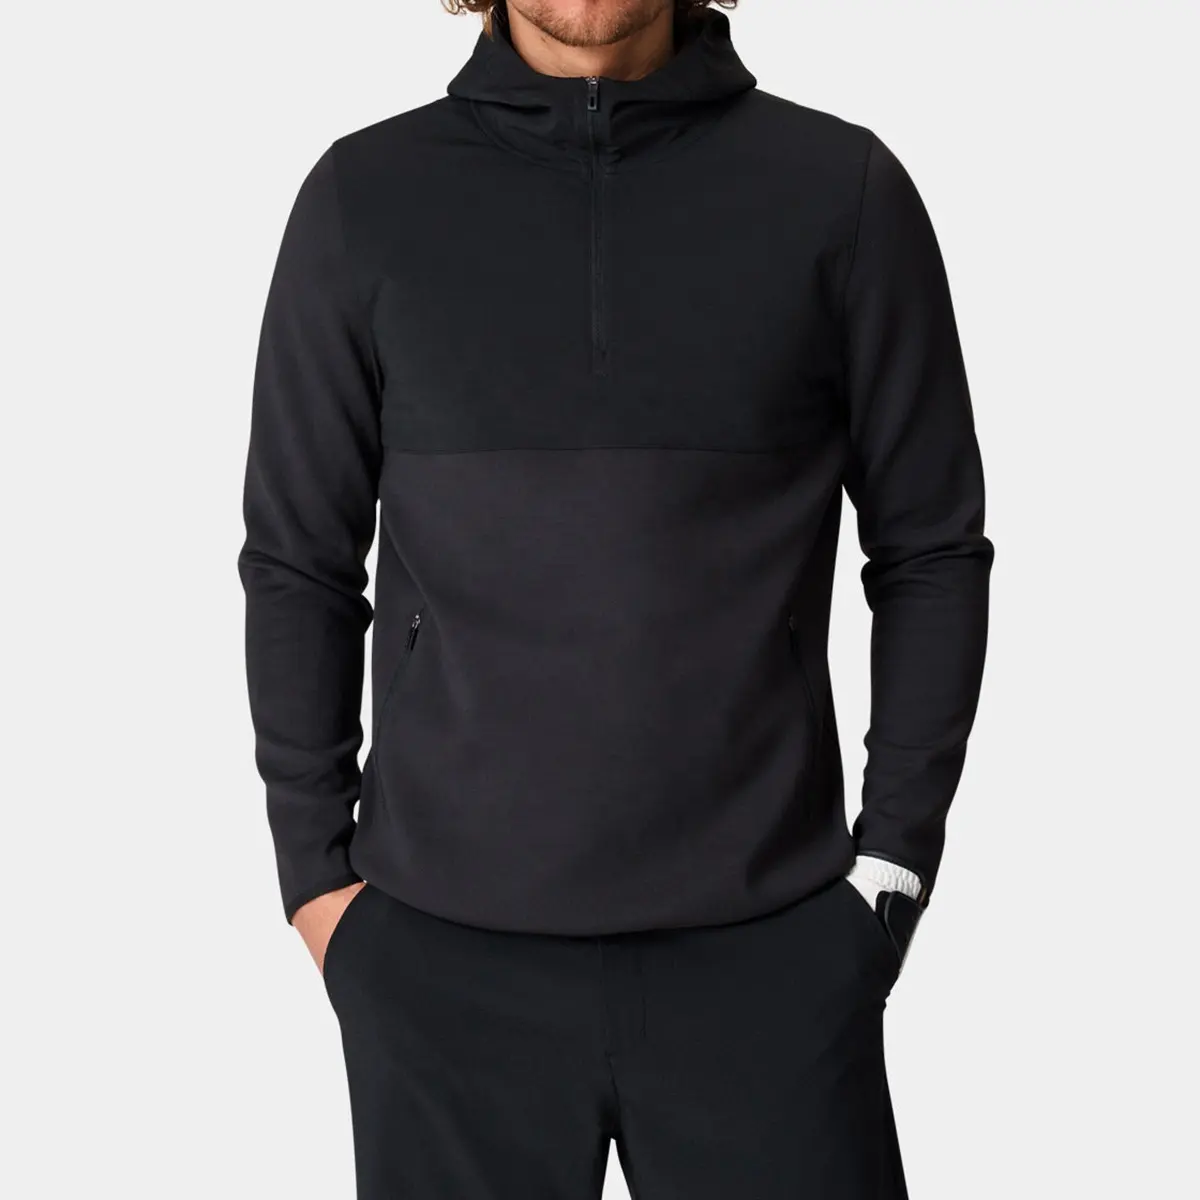 Produk baru 1/4 Zip Pullover Golf Polyester Spandex ringan hitam Slim FIt olahraga Golf Hoodie untuk pria